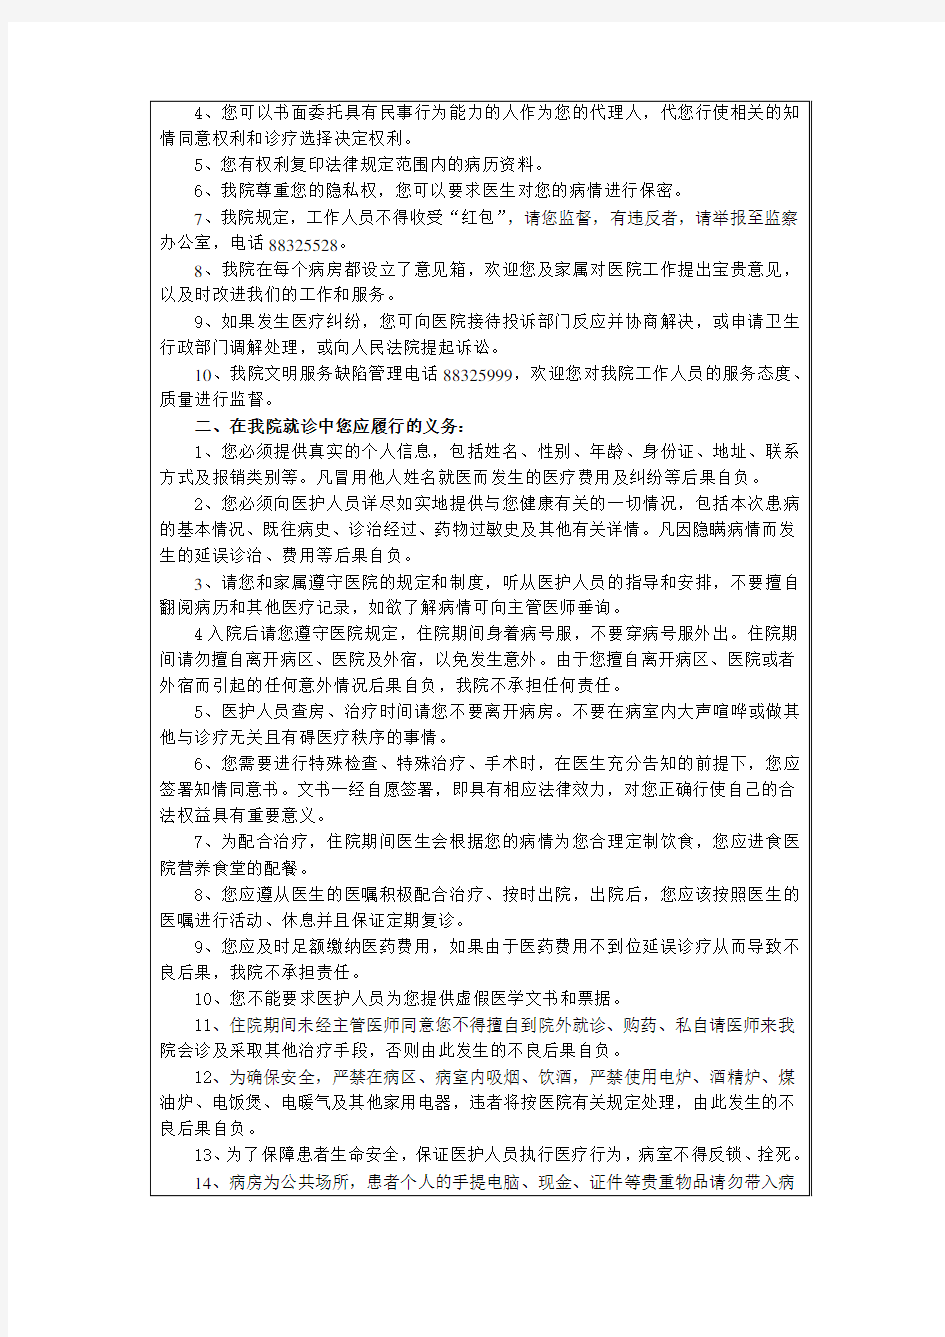 北京大学人民医院医疗知情同意书汇编 公共告知部分